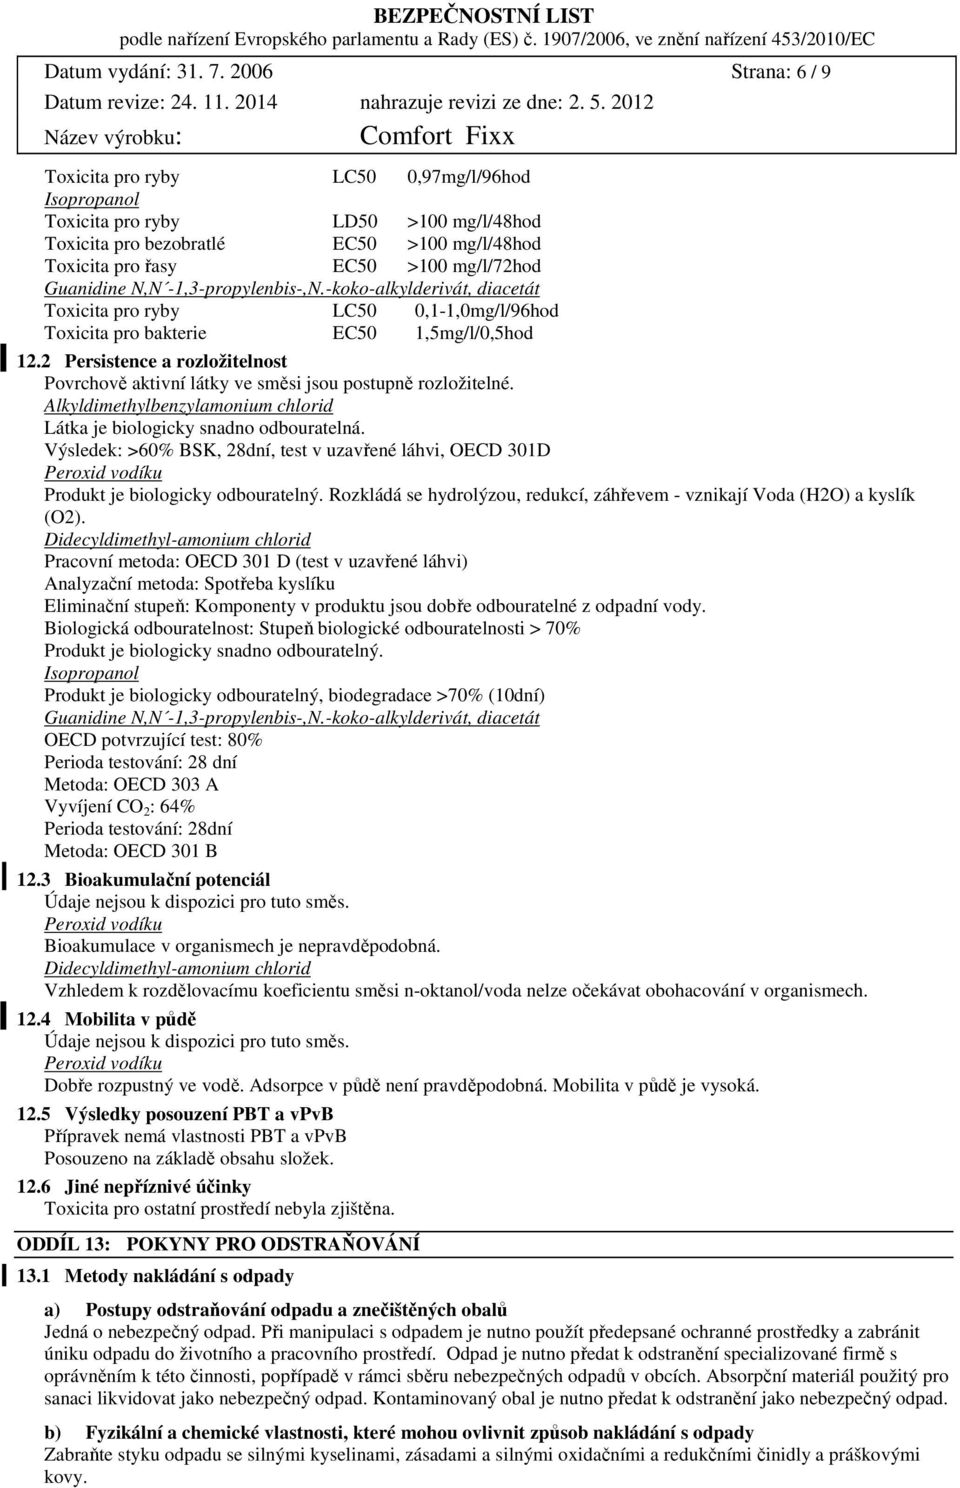 Guanidine N,N 1,3propylenbis,N.kokoalkylderivát, diacetát Toxicita pro ryby LC50 0,11,0mg/l/96hod Toxicita pro bakterie EC50 1,5mg/l/0,5hod 12.